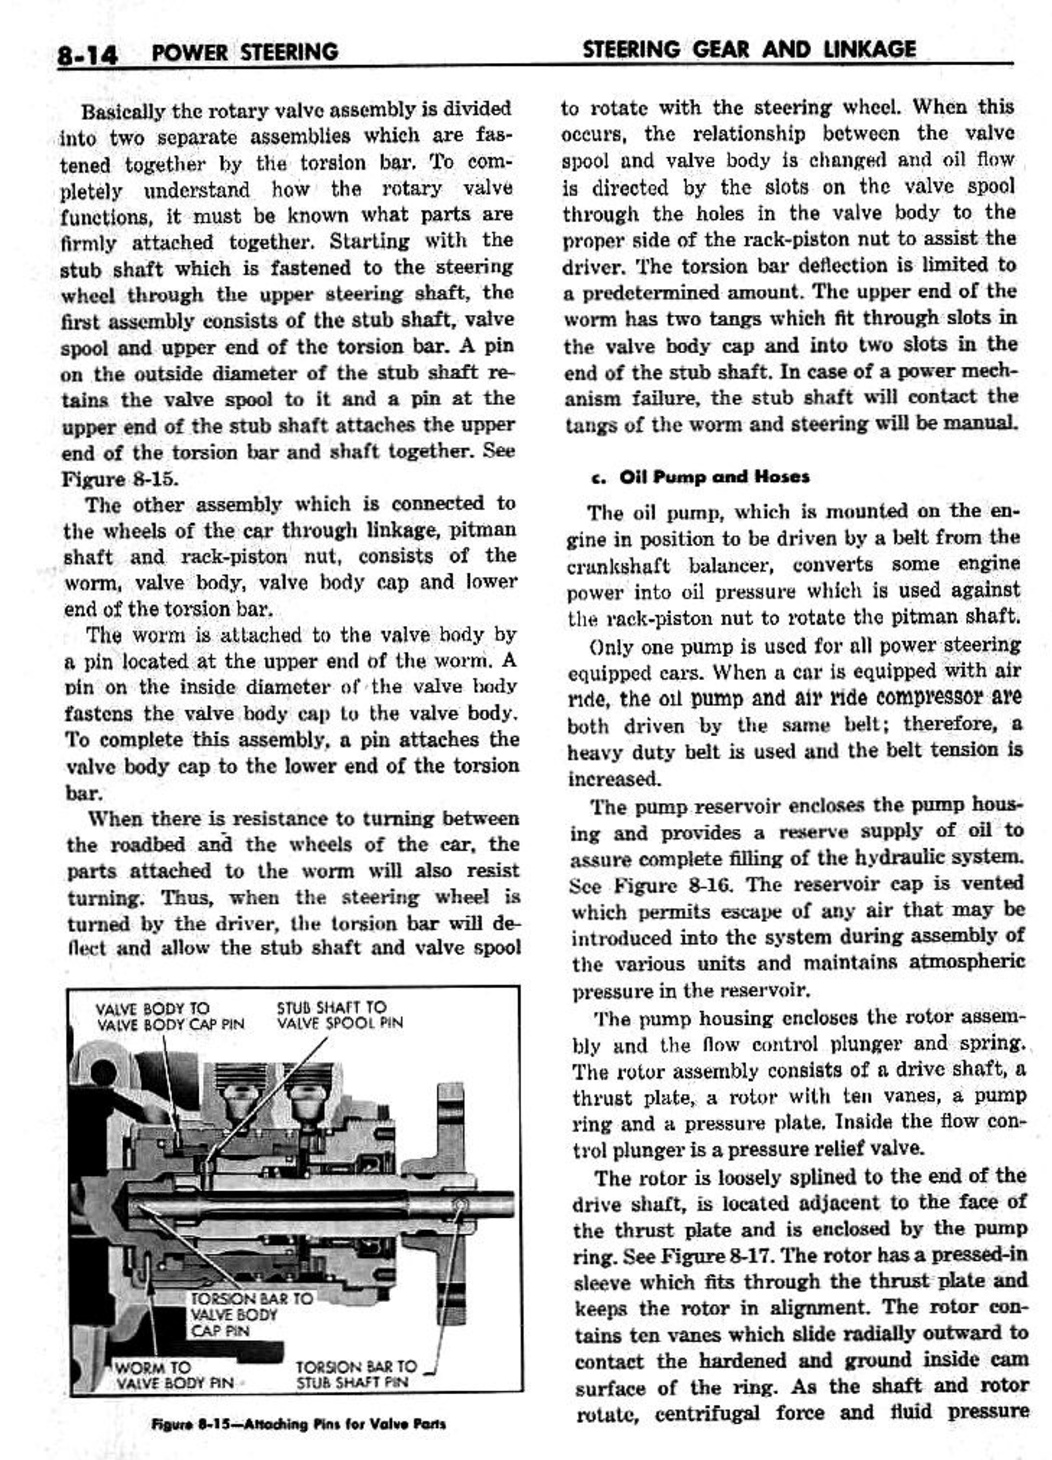 n_09 1959 Buick Shop Manual - Steering-014-014.jpg